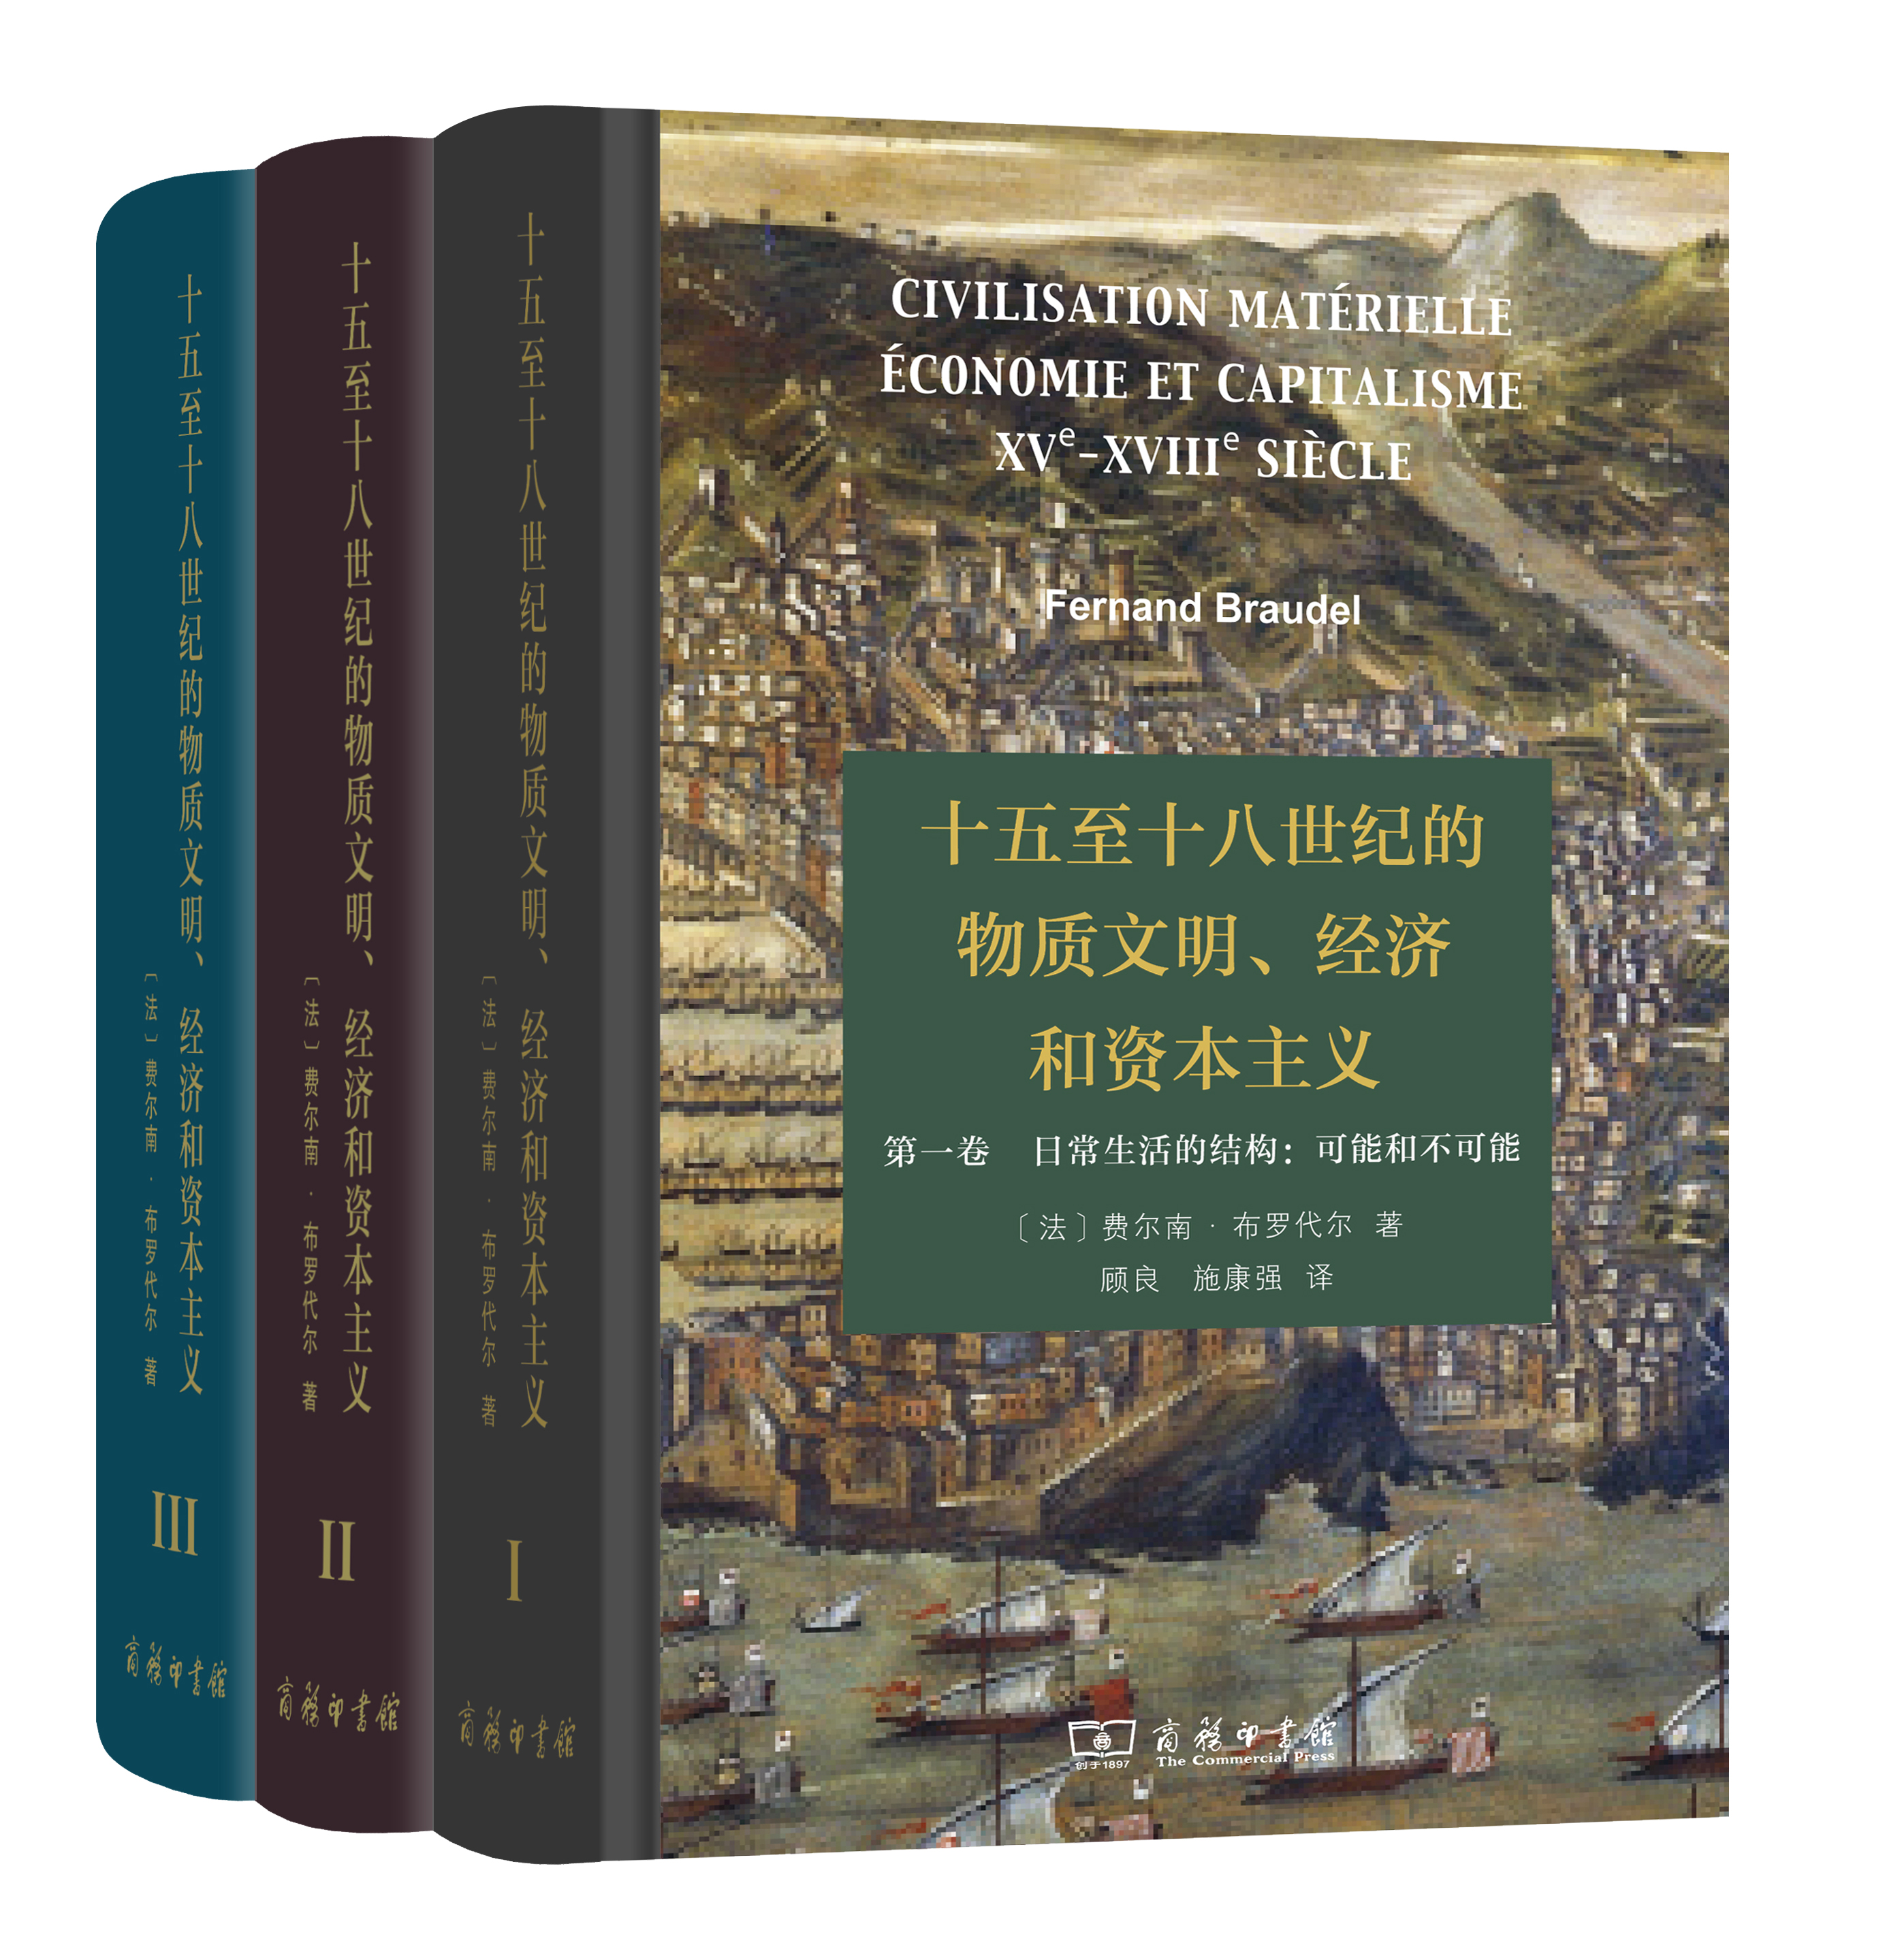 《十五至十八世纪的物质文明、经济和资本主义》，布罗代尔 著，顾良、施康强 译，商务印书馆2017年出版。